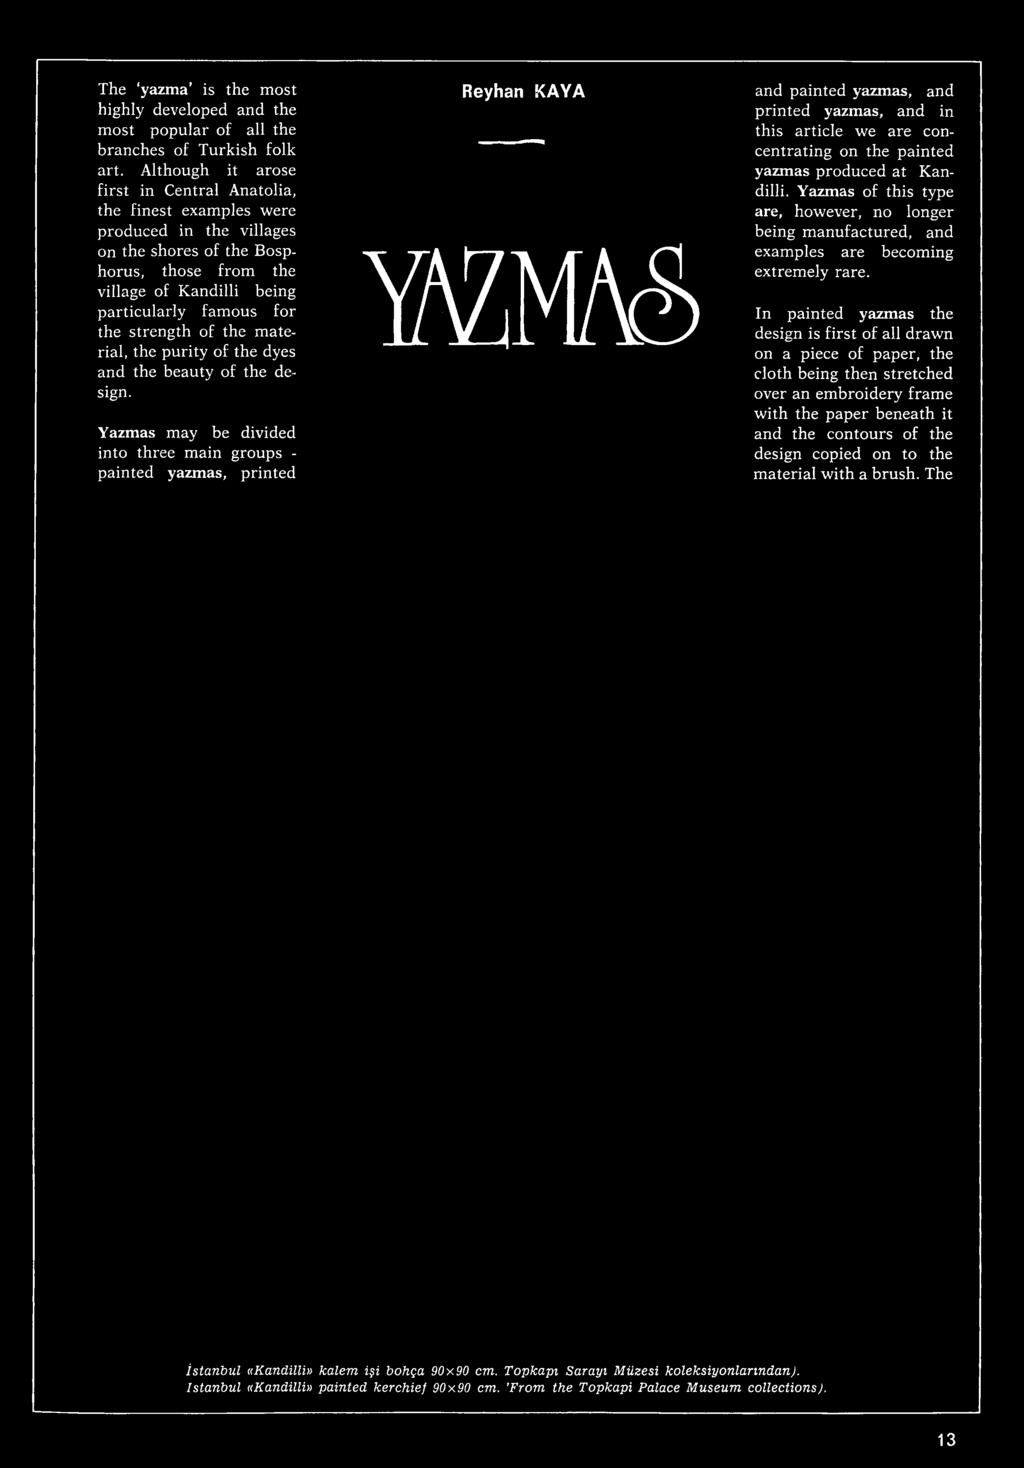 Yazmas may be divided into three main groups - painted yazmas, printed Reyhan KAYA wm and painted yazmas, and